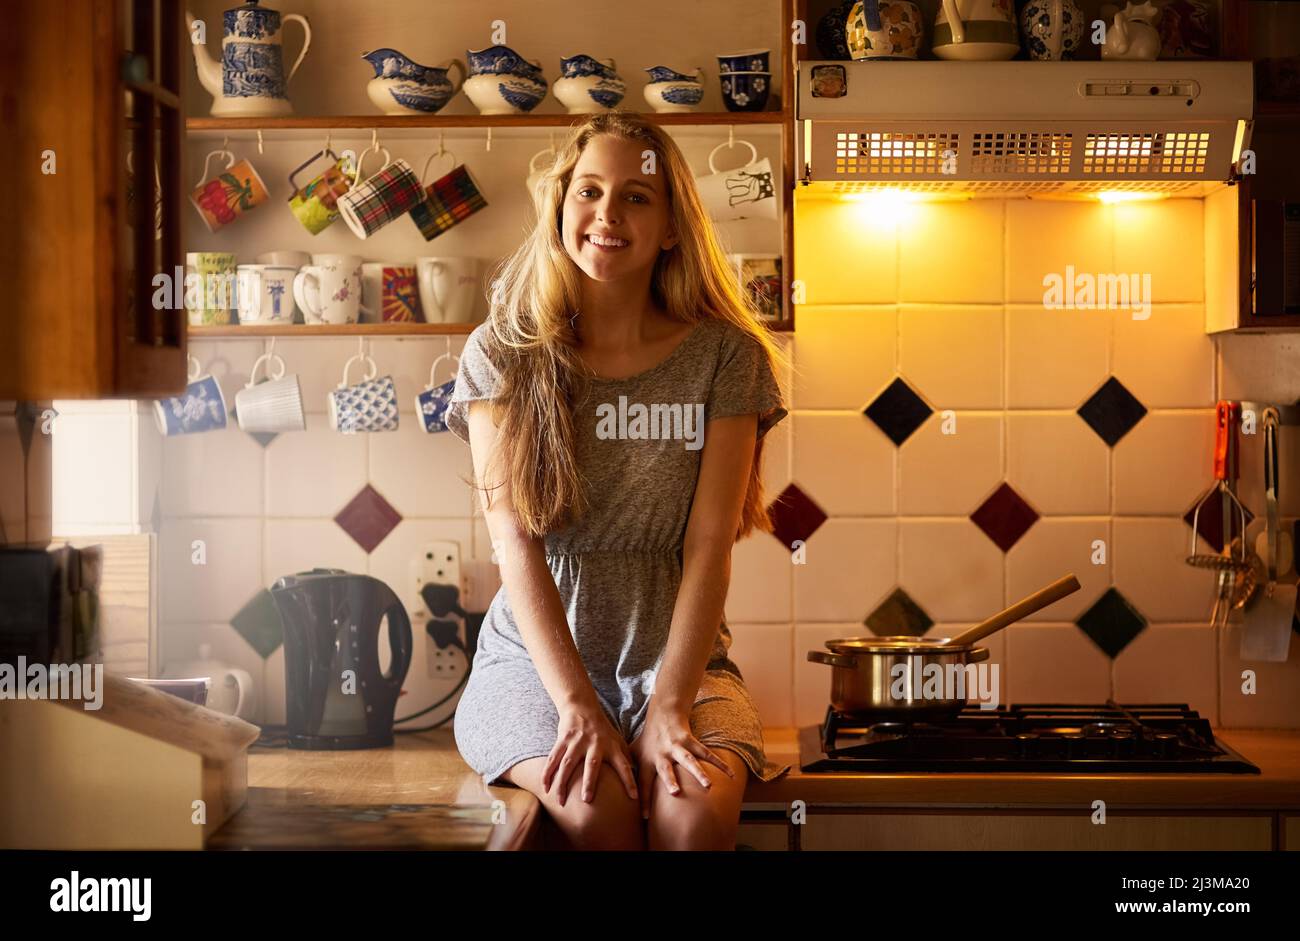 La maison pour le week-end. Portrait d'une jeune femme attrayante assise dans sa cuisine. Banque D'Images